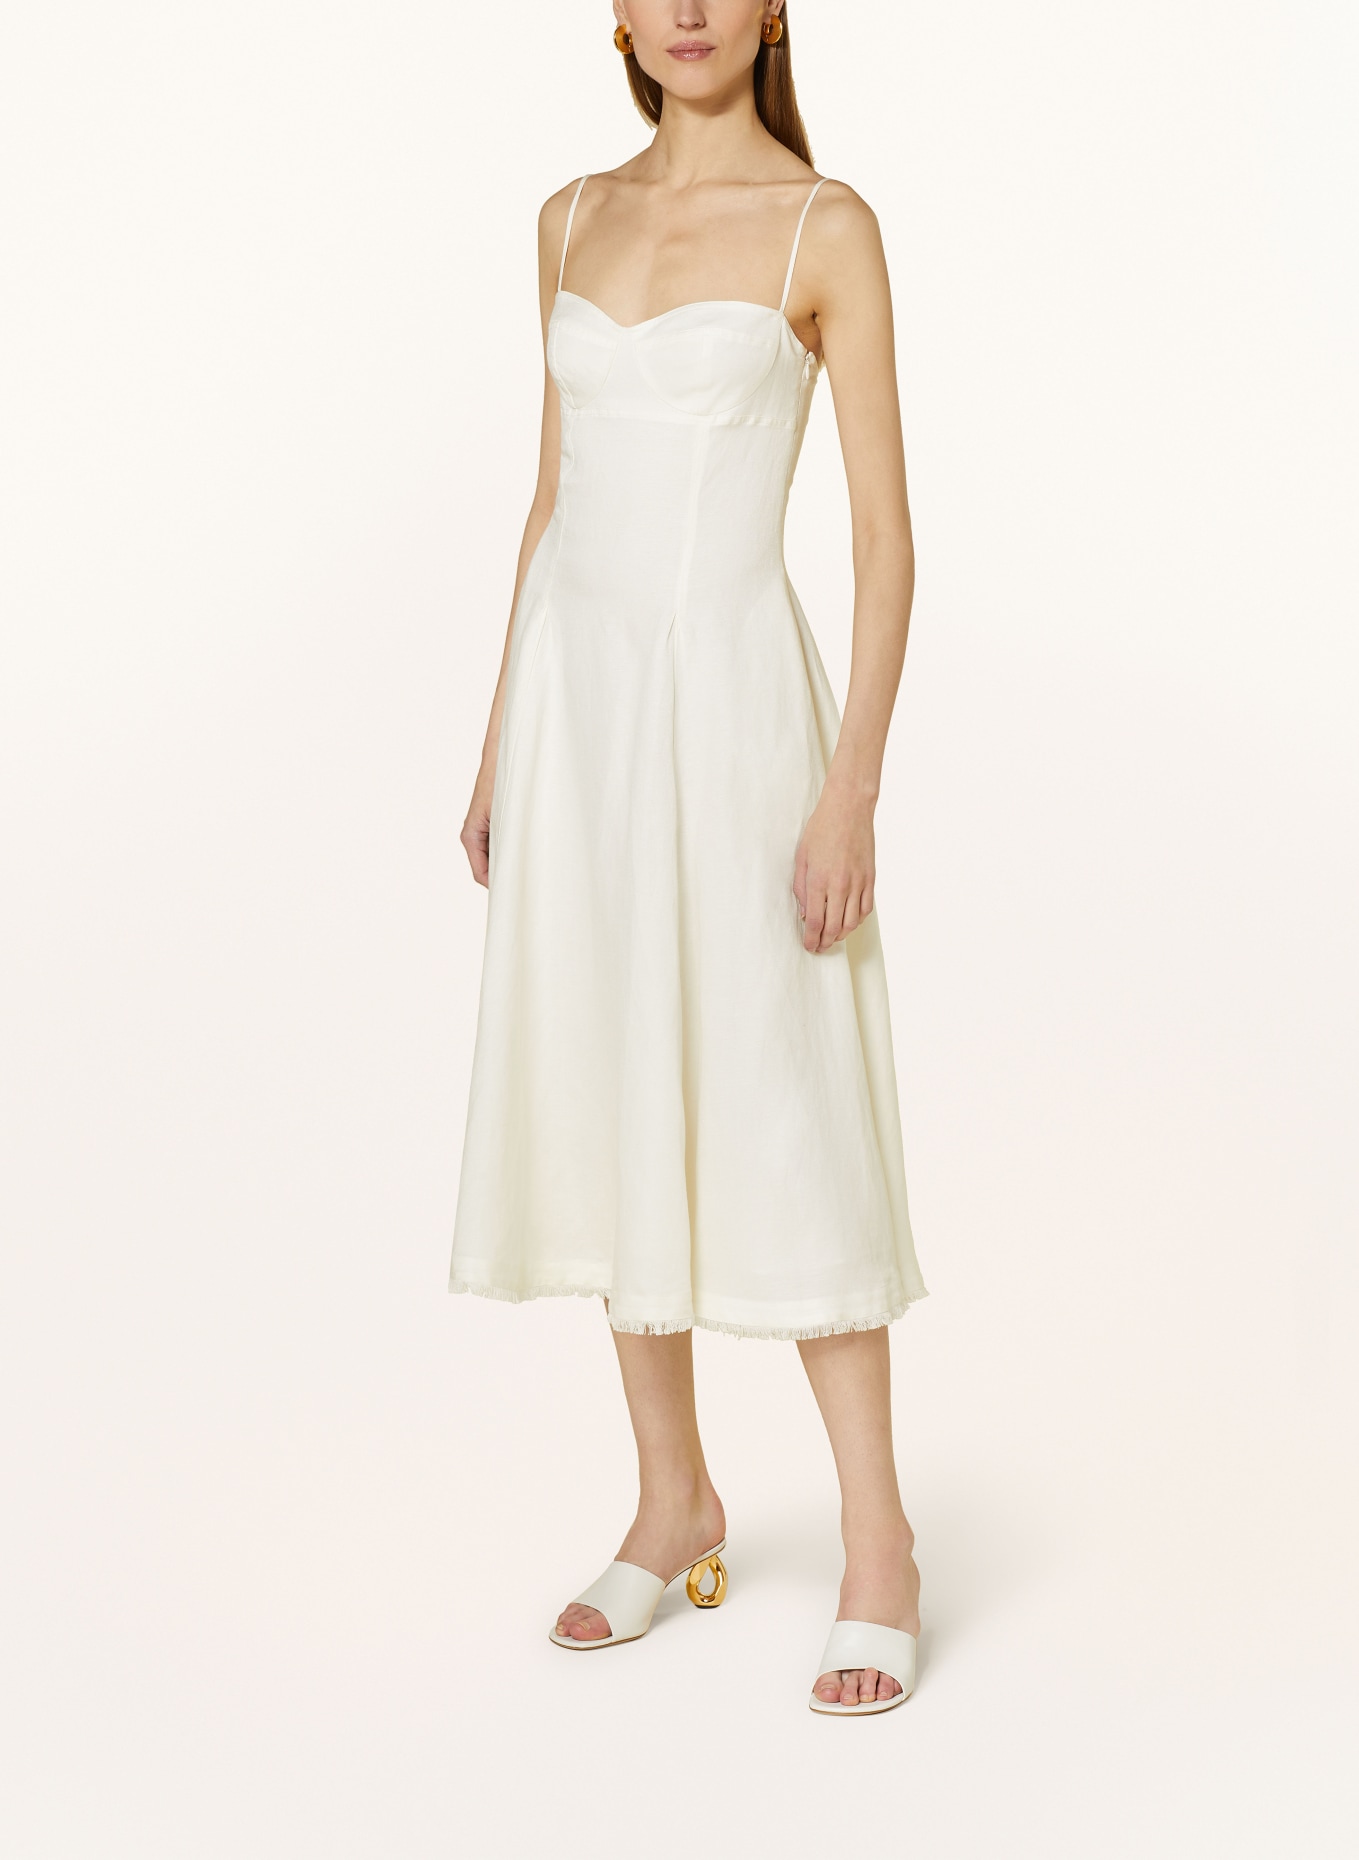 SIMKHAI Kleid ANALISE mit Leinen, Farbe: WEISS (Bild 2)